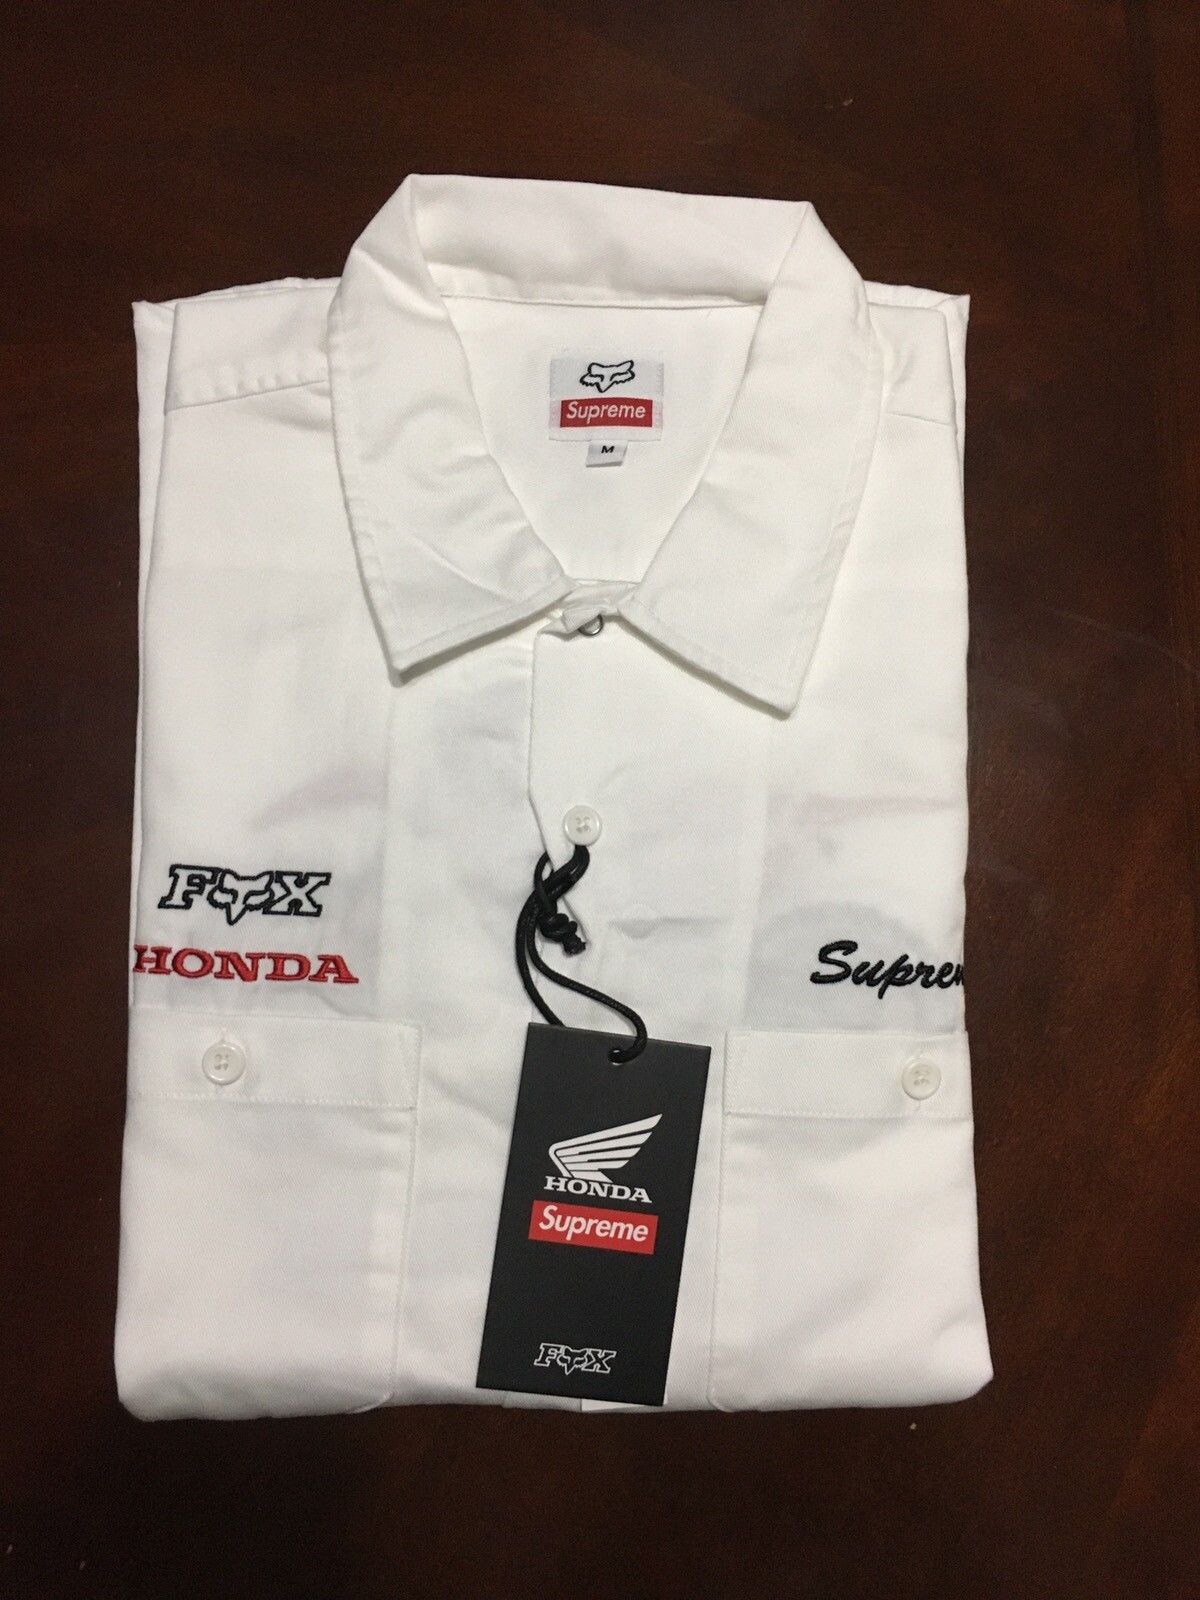 Supreme Supreme®/Honda®/Fox® Racing Work Shirt | Grailed